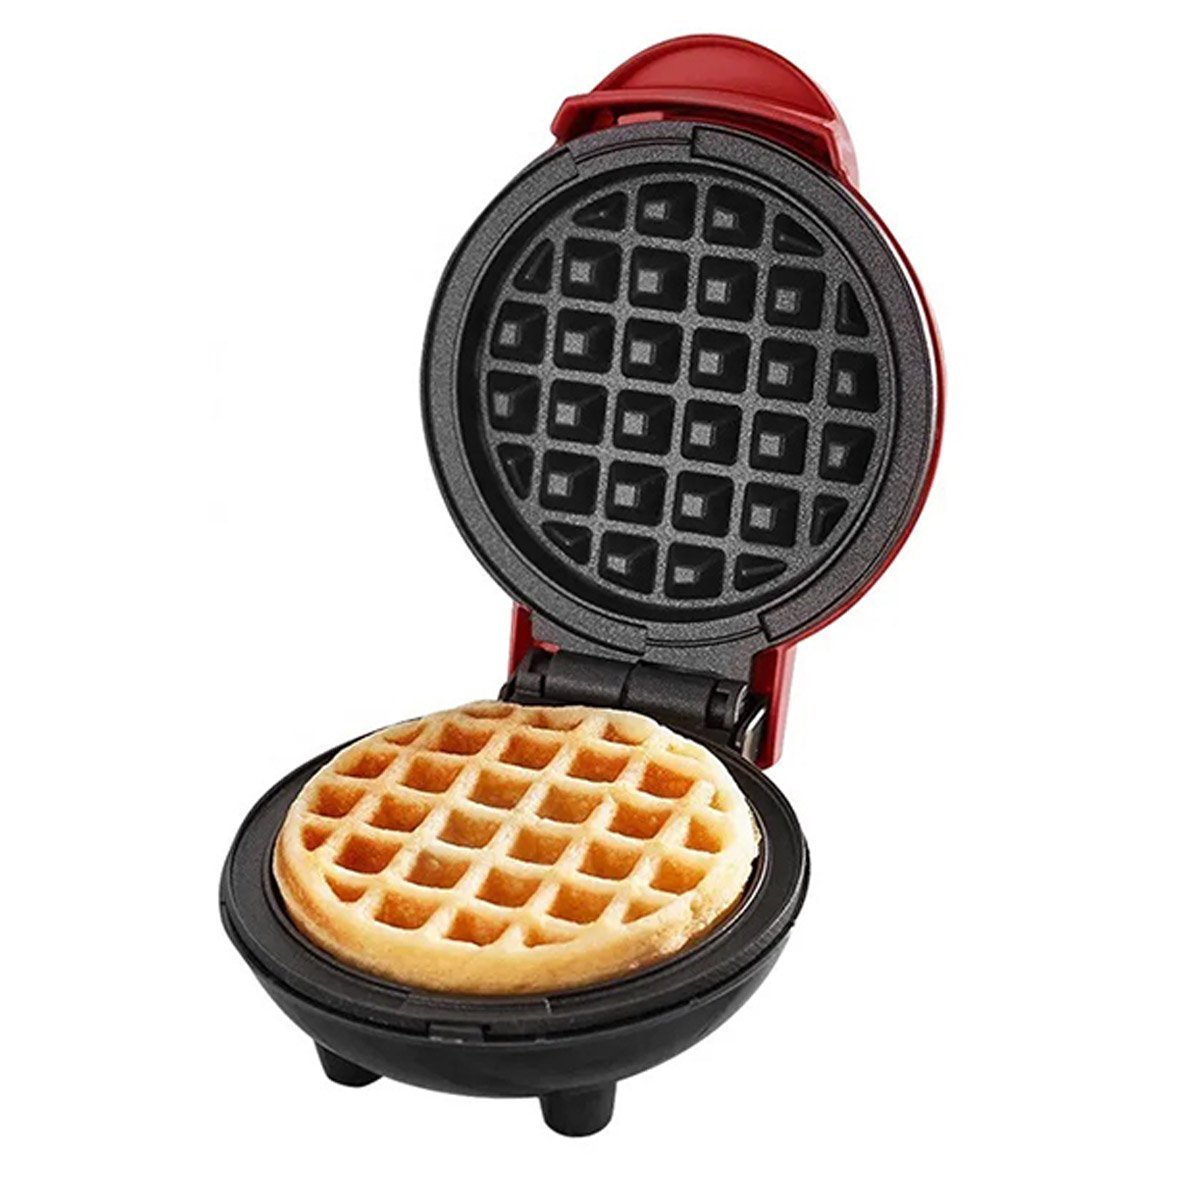 Mini Maquina de Waffles Panqueca Refeiçao Lanche Cozinha Cafe da Manha Placa Antiaderente Resistente - 3